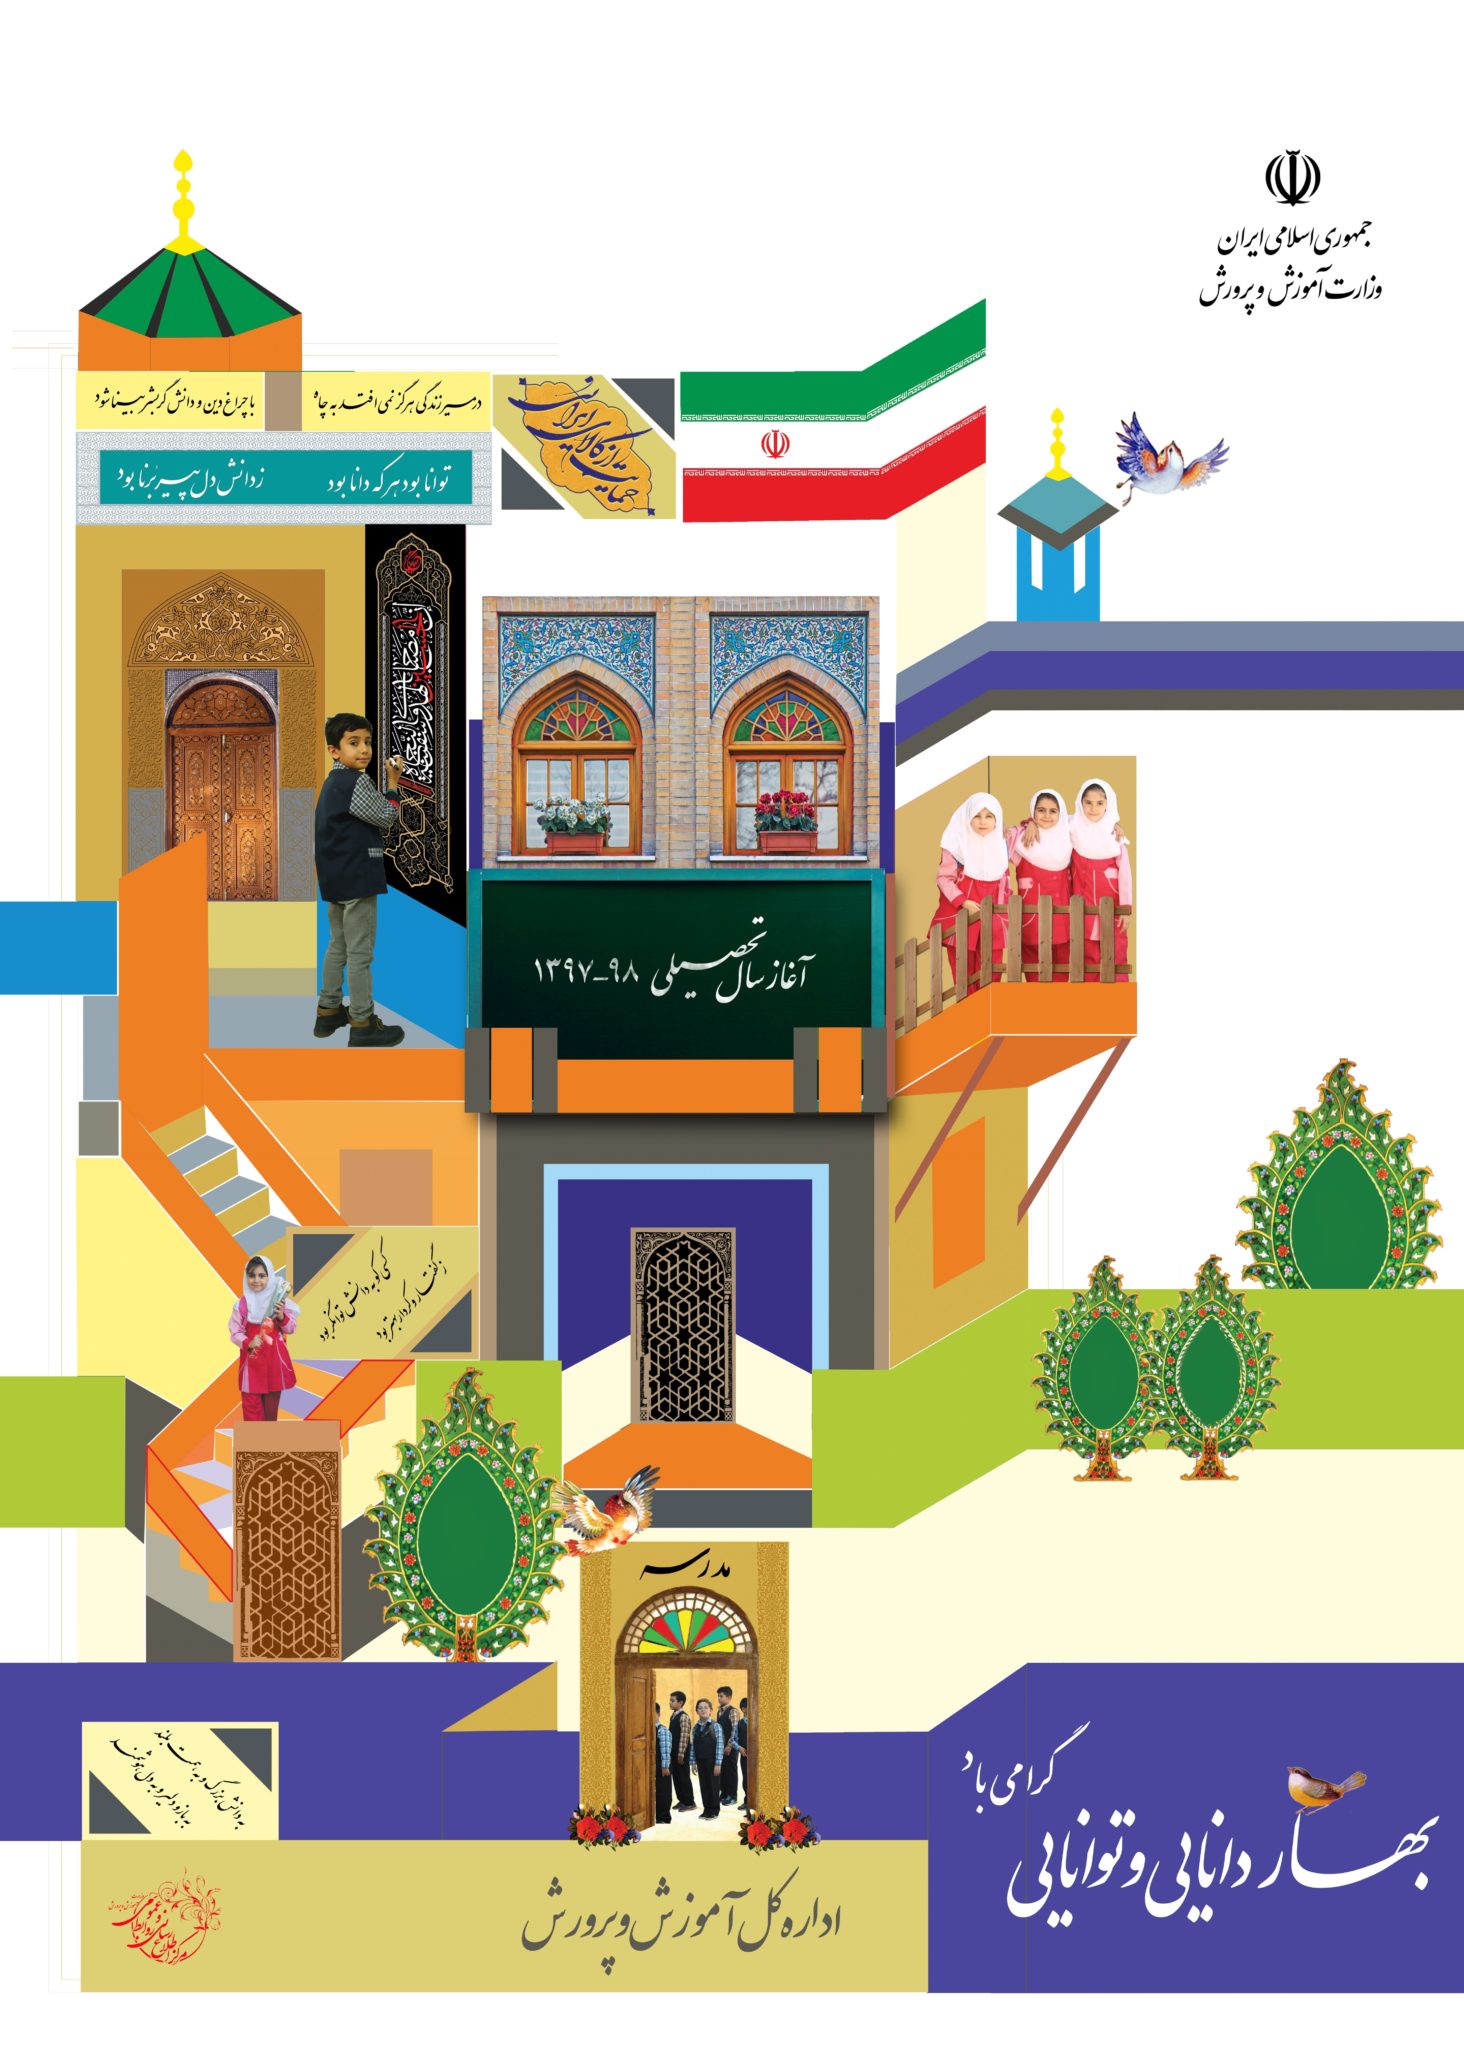 بازگشایی مدارس در مهرماه ۹۷